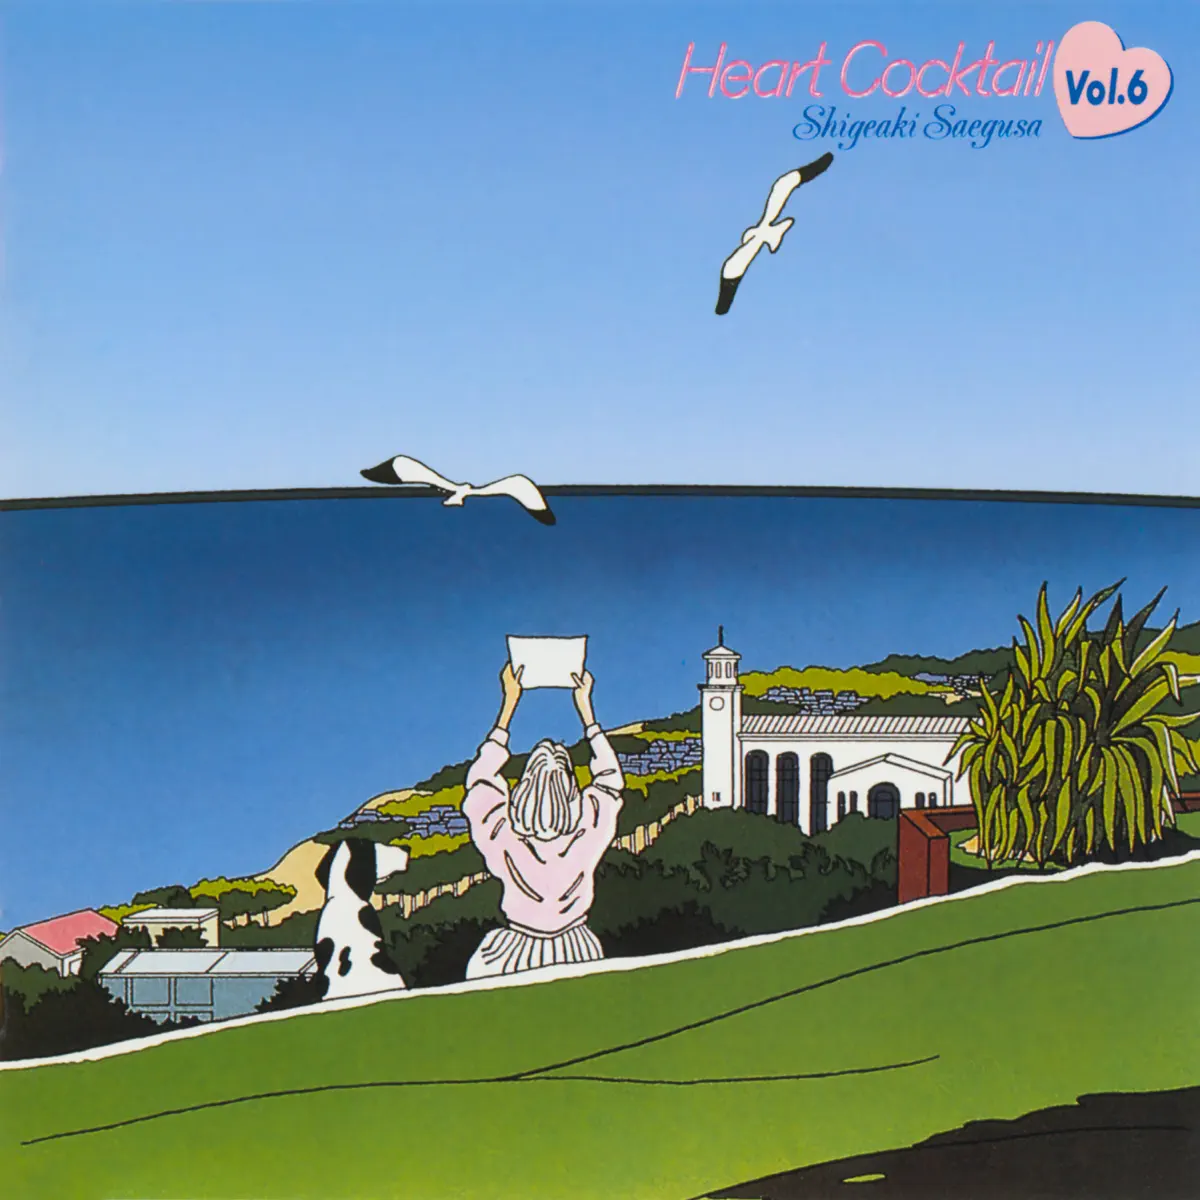 三枝成彰 - 心形鸡尾酒 Heart Cocktail, Vol. 6 (1987) [iTunes Plus AAC M4A]-新房子